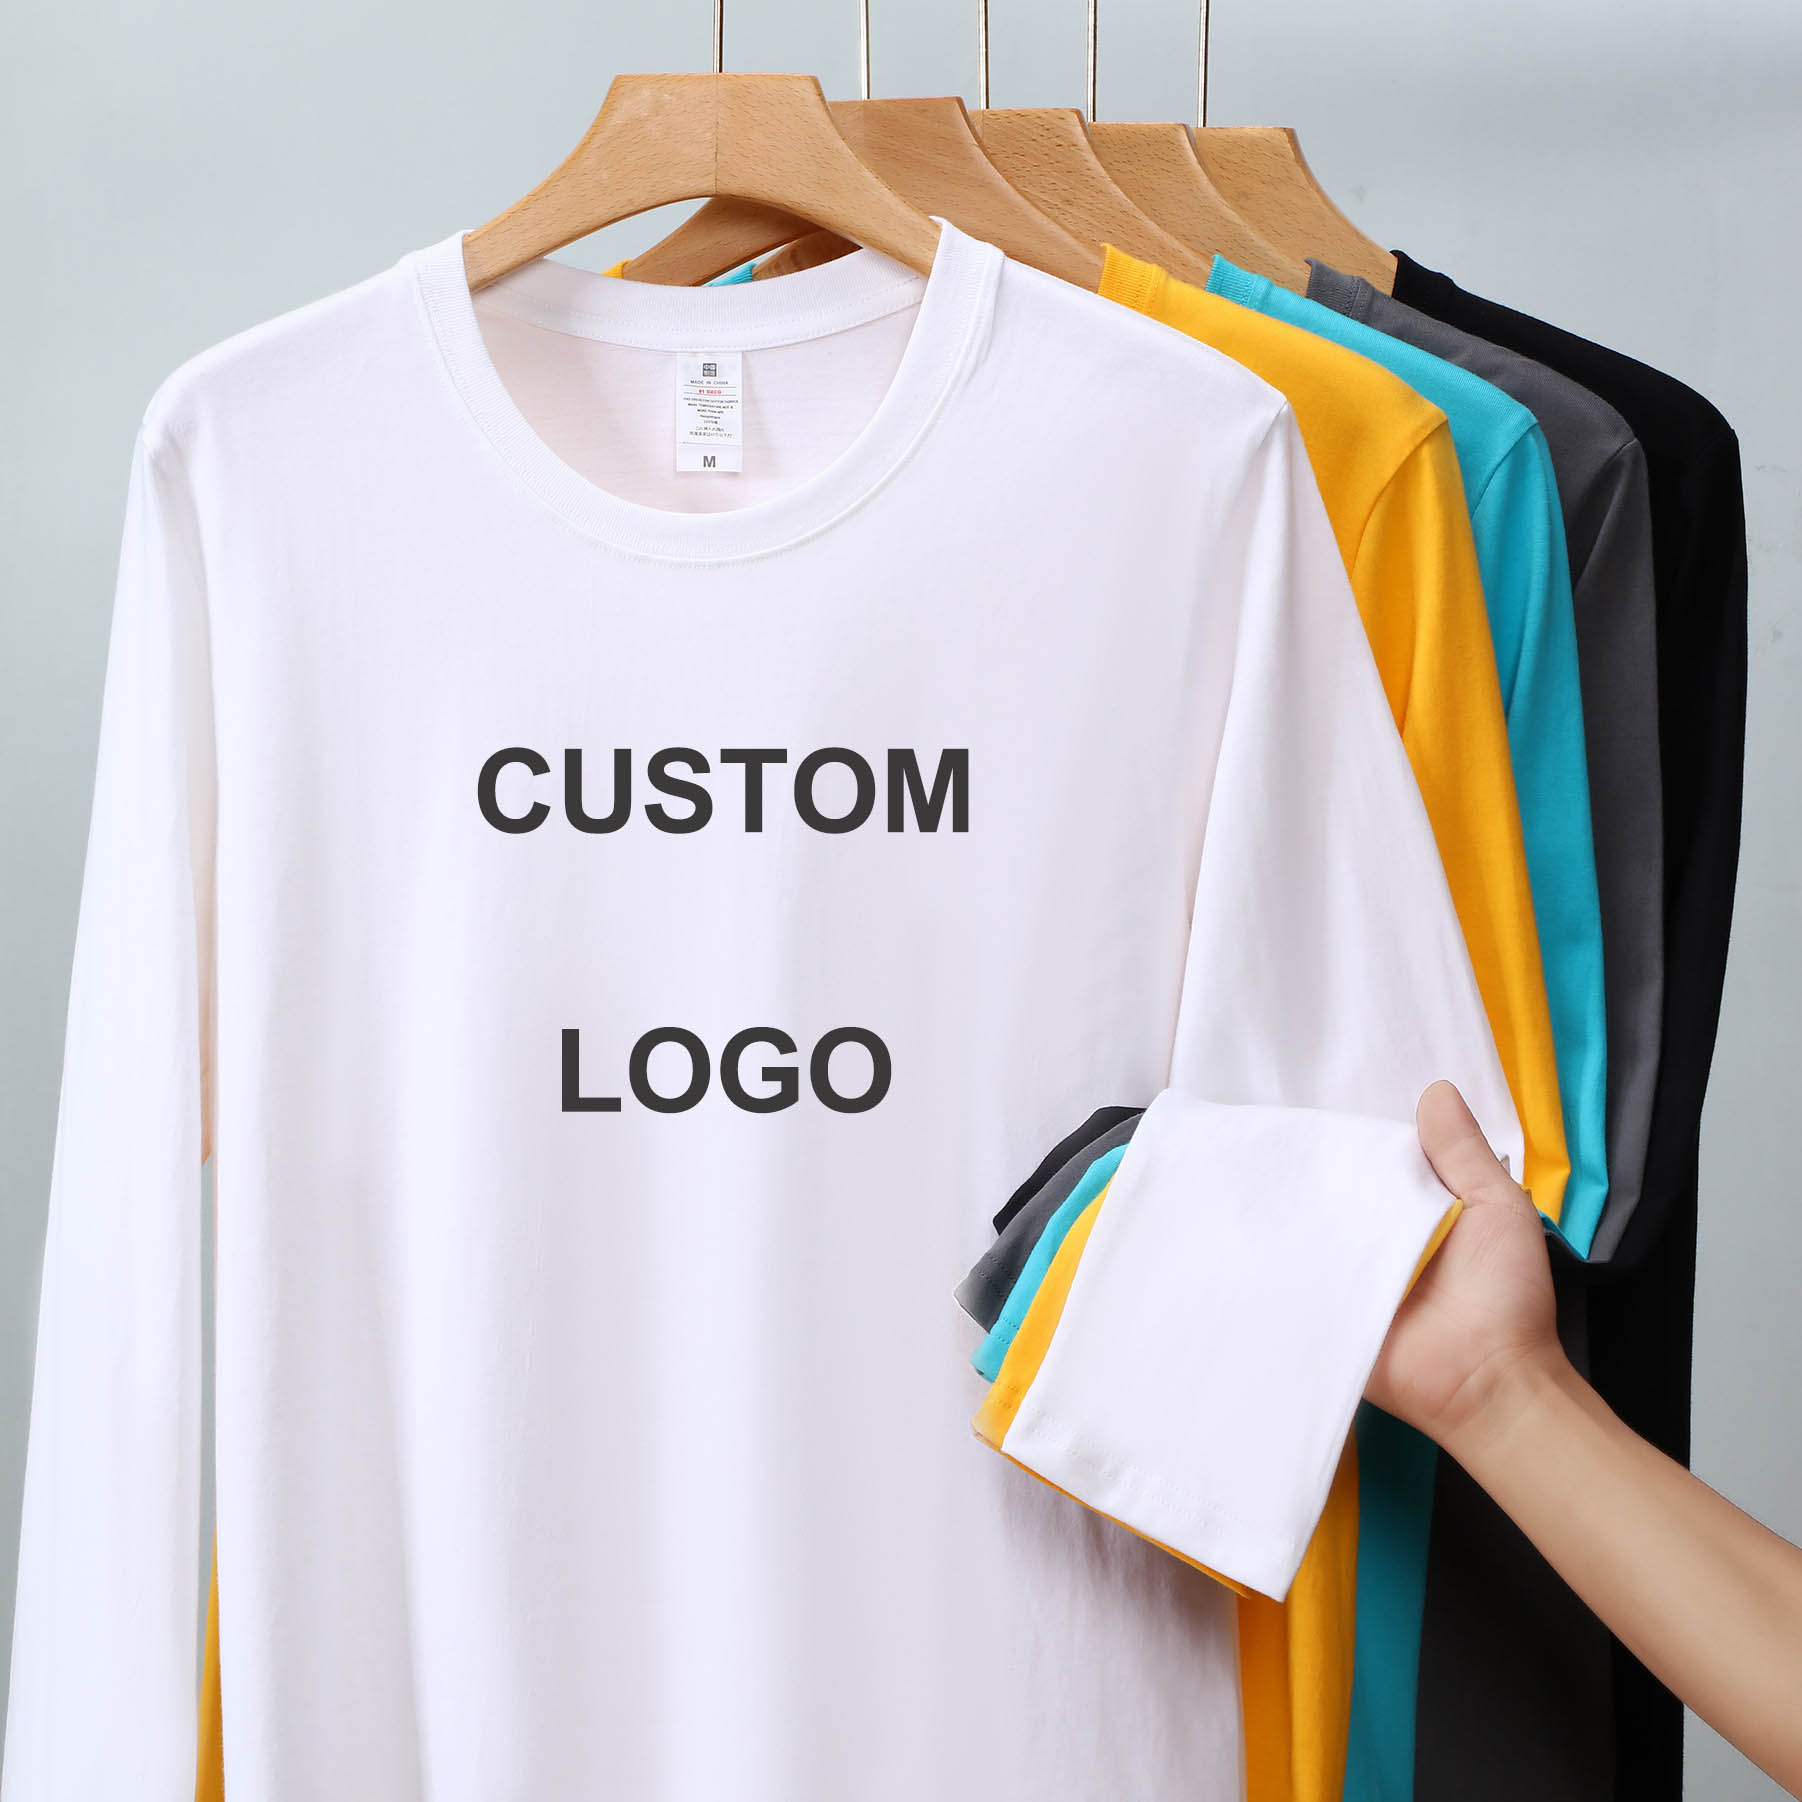 High quality unisex polyester spandex long sleeve t shirt oversized plain custom printing logo full sleeve t shirt for men women